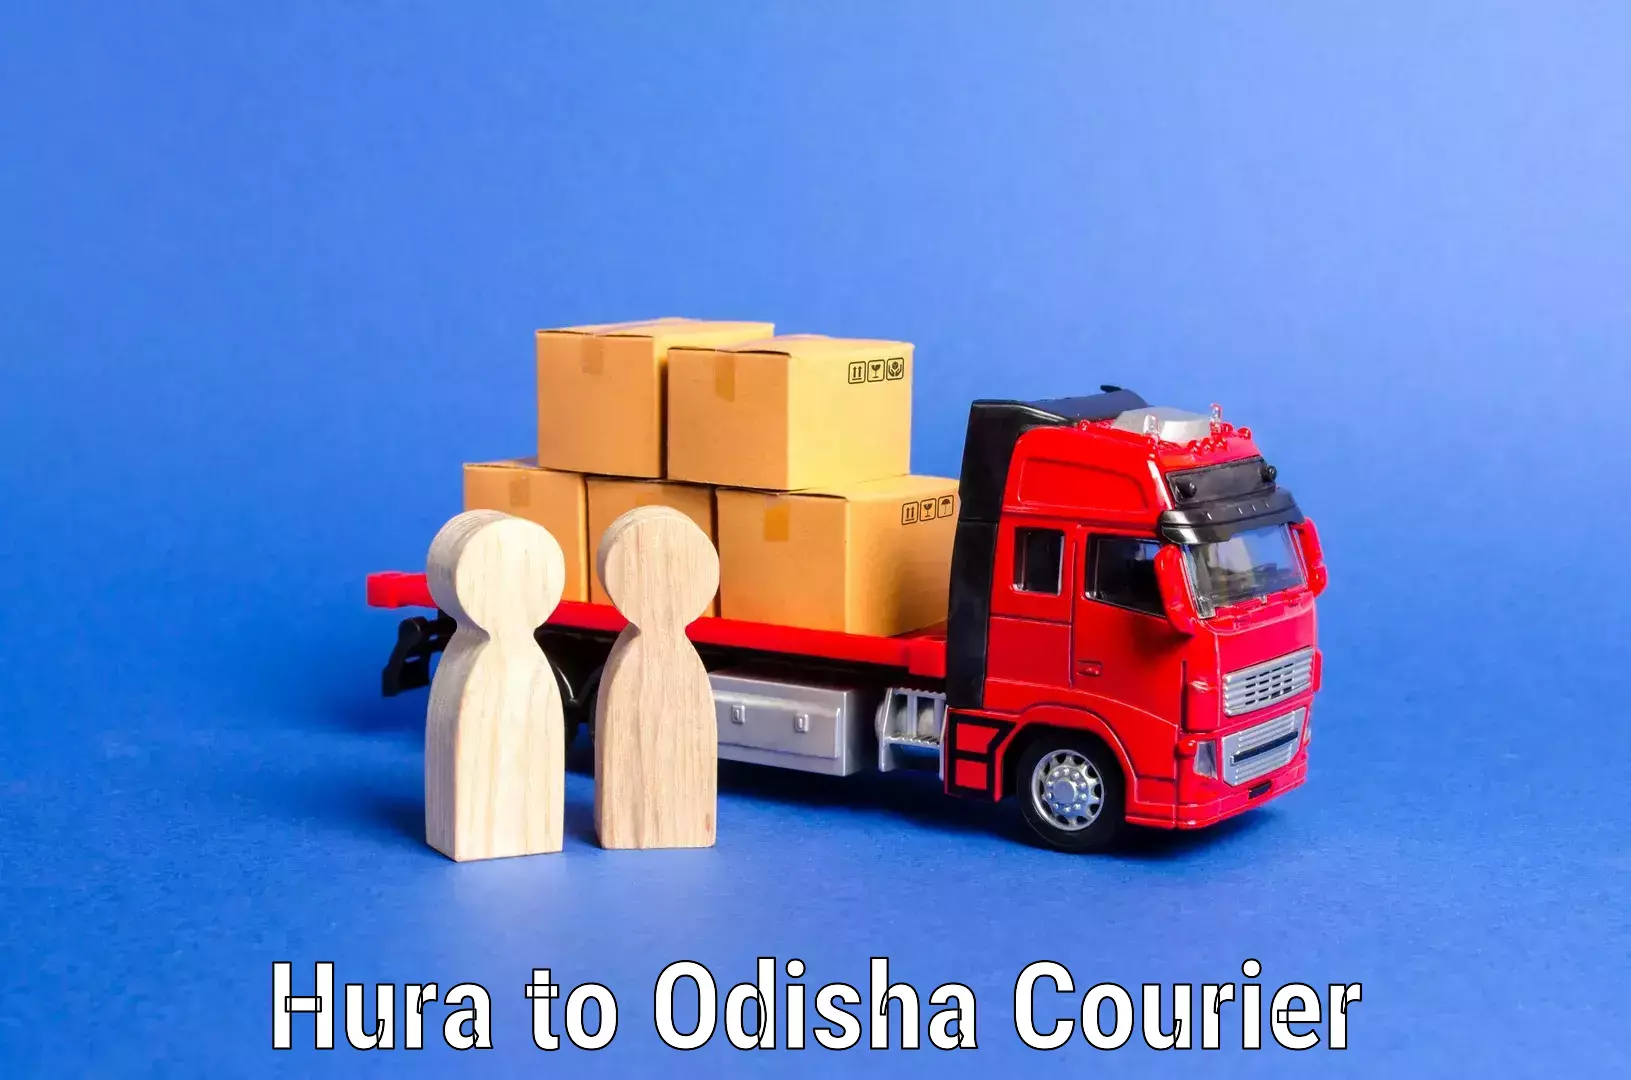 Budget-friendly movers Hura to Odisha